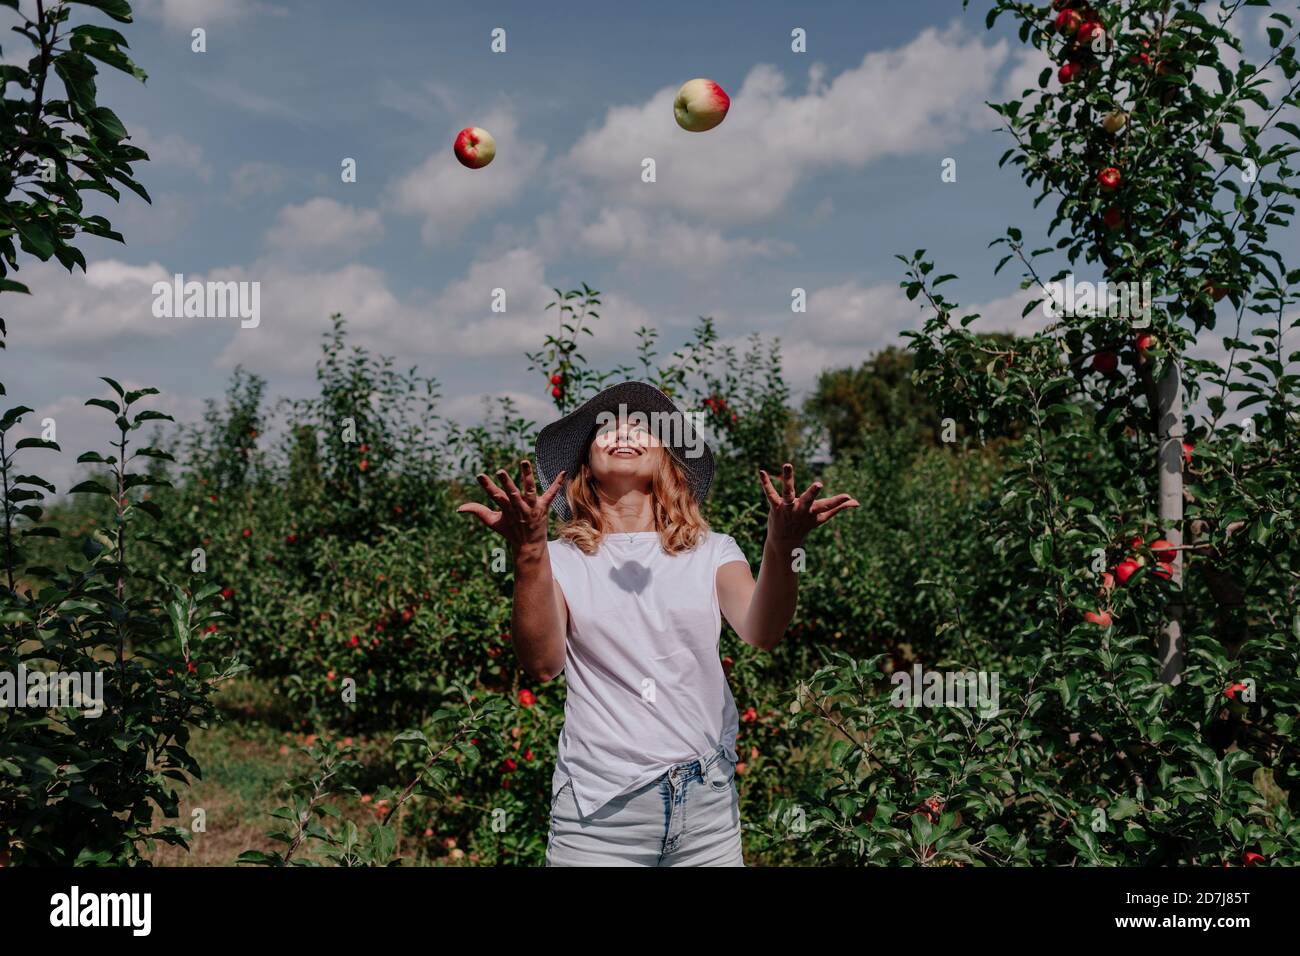 Mittlere Erwachsene Frau, die Äpfel in die Luft wirft, während sie mitten steht Bäume am Obstgarten Stockfoto